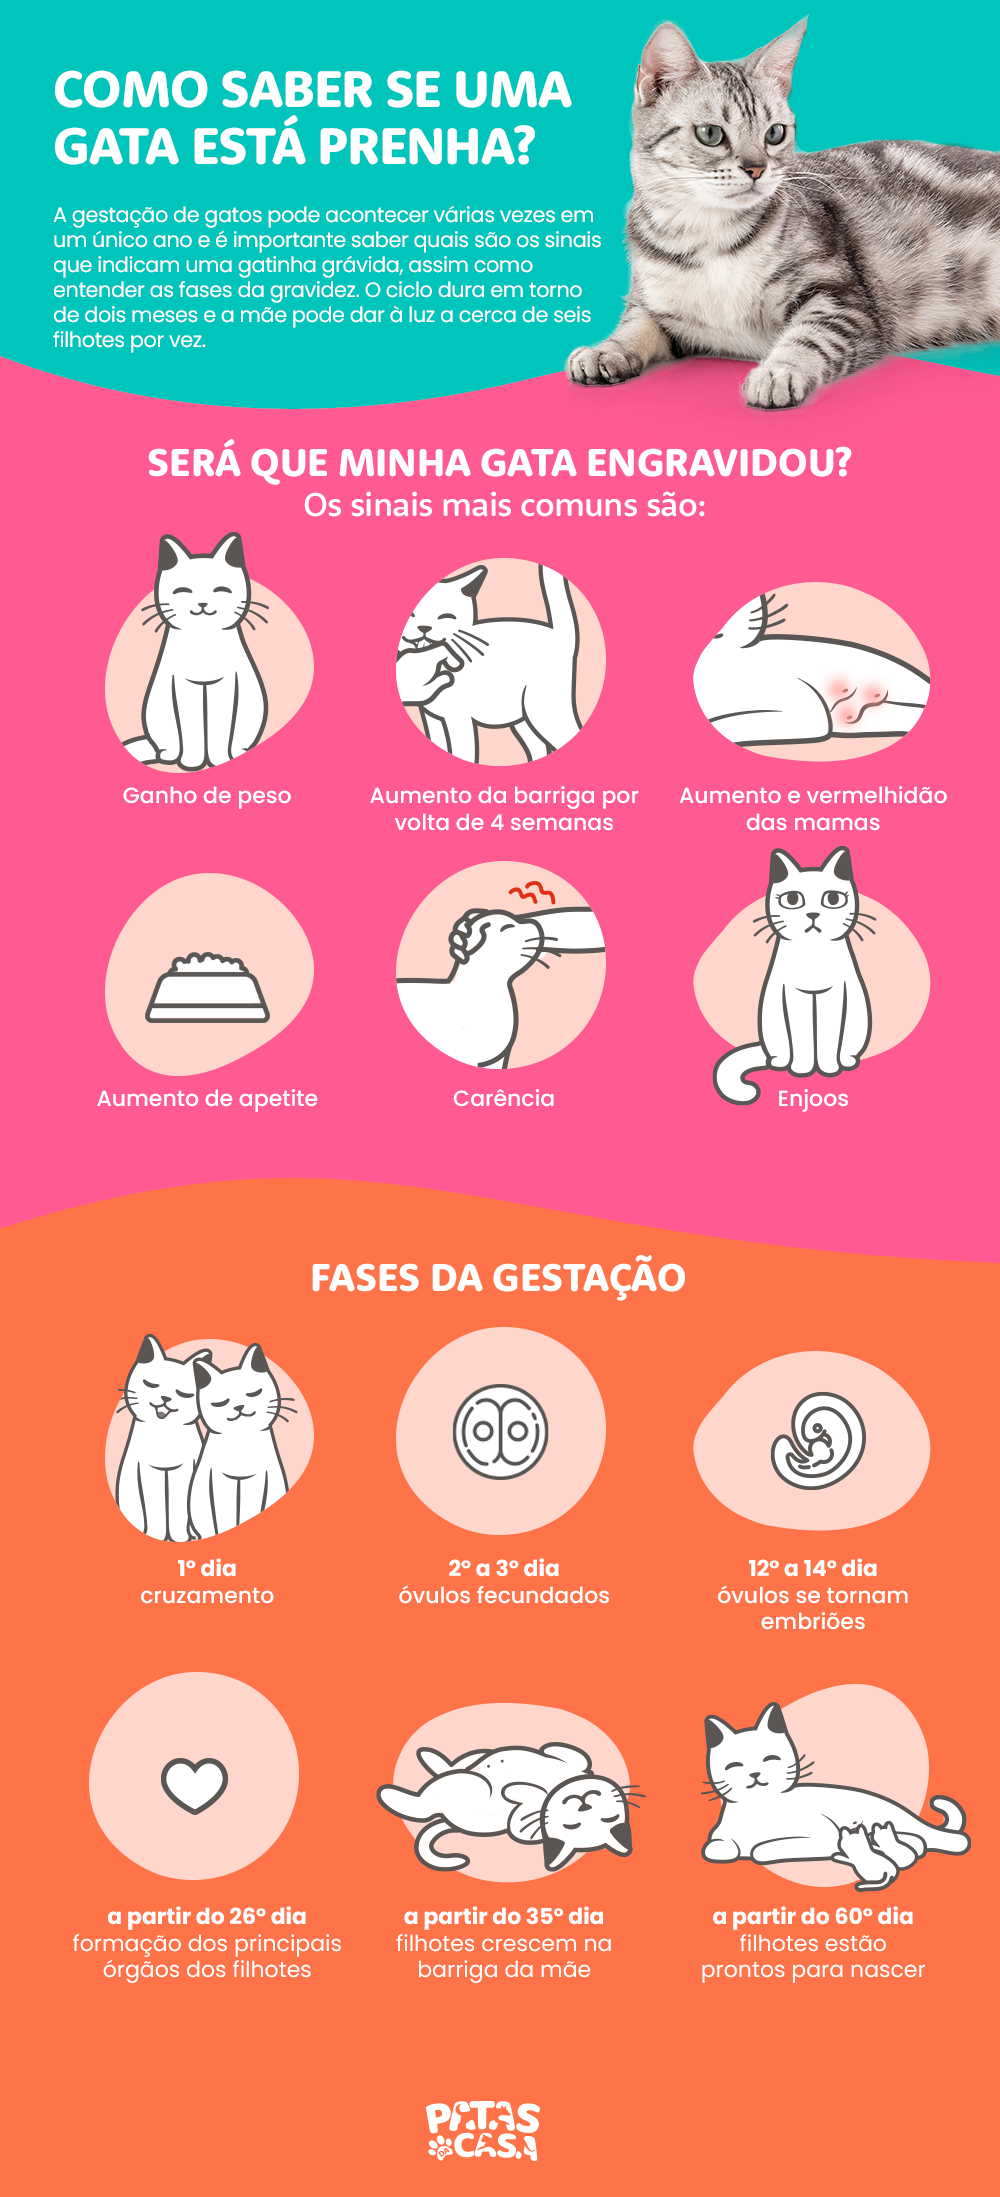 Infográfico mostrando como saber se uma gata está prenha